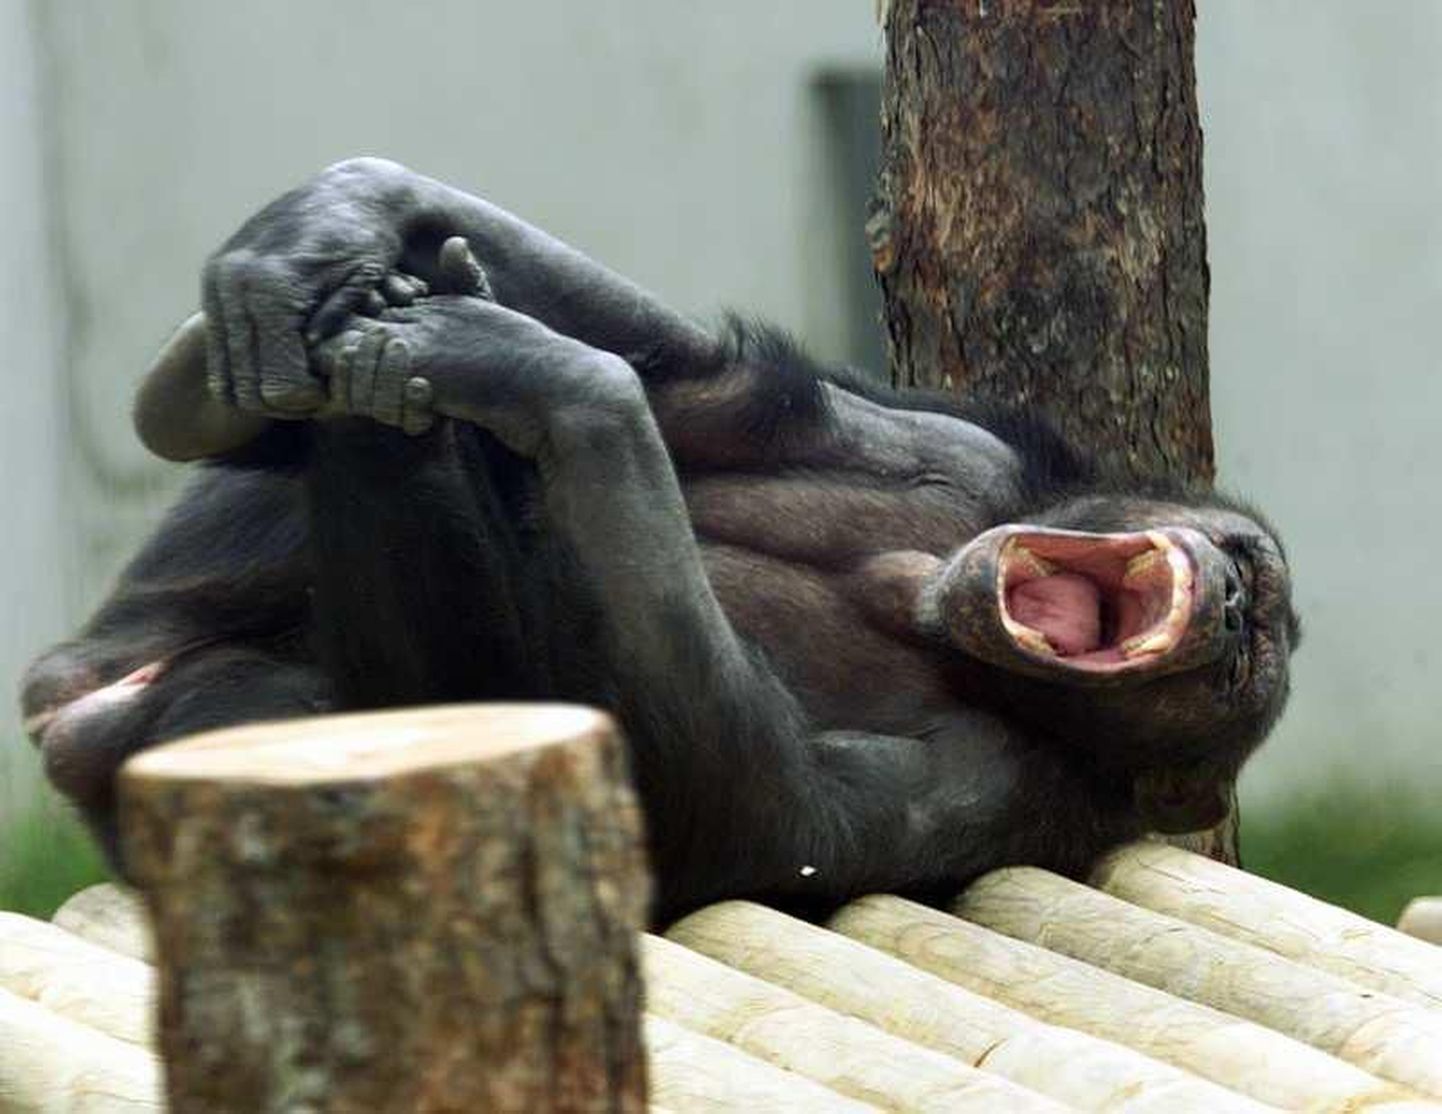 Inimestel läheb igavus üle paari-kolmne tunniga. Pildil Tallinna loomaaias igavusest haigutav šimpans.